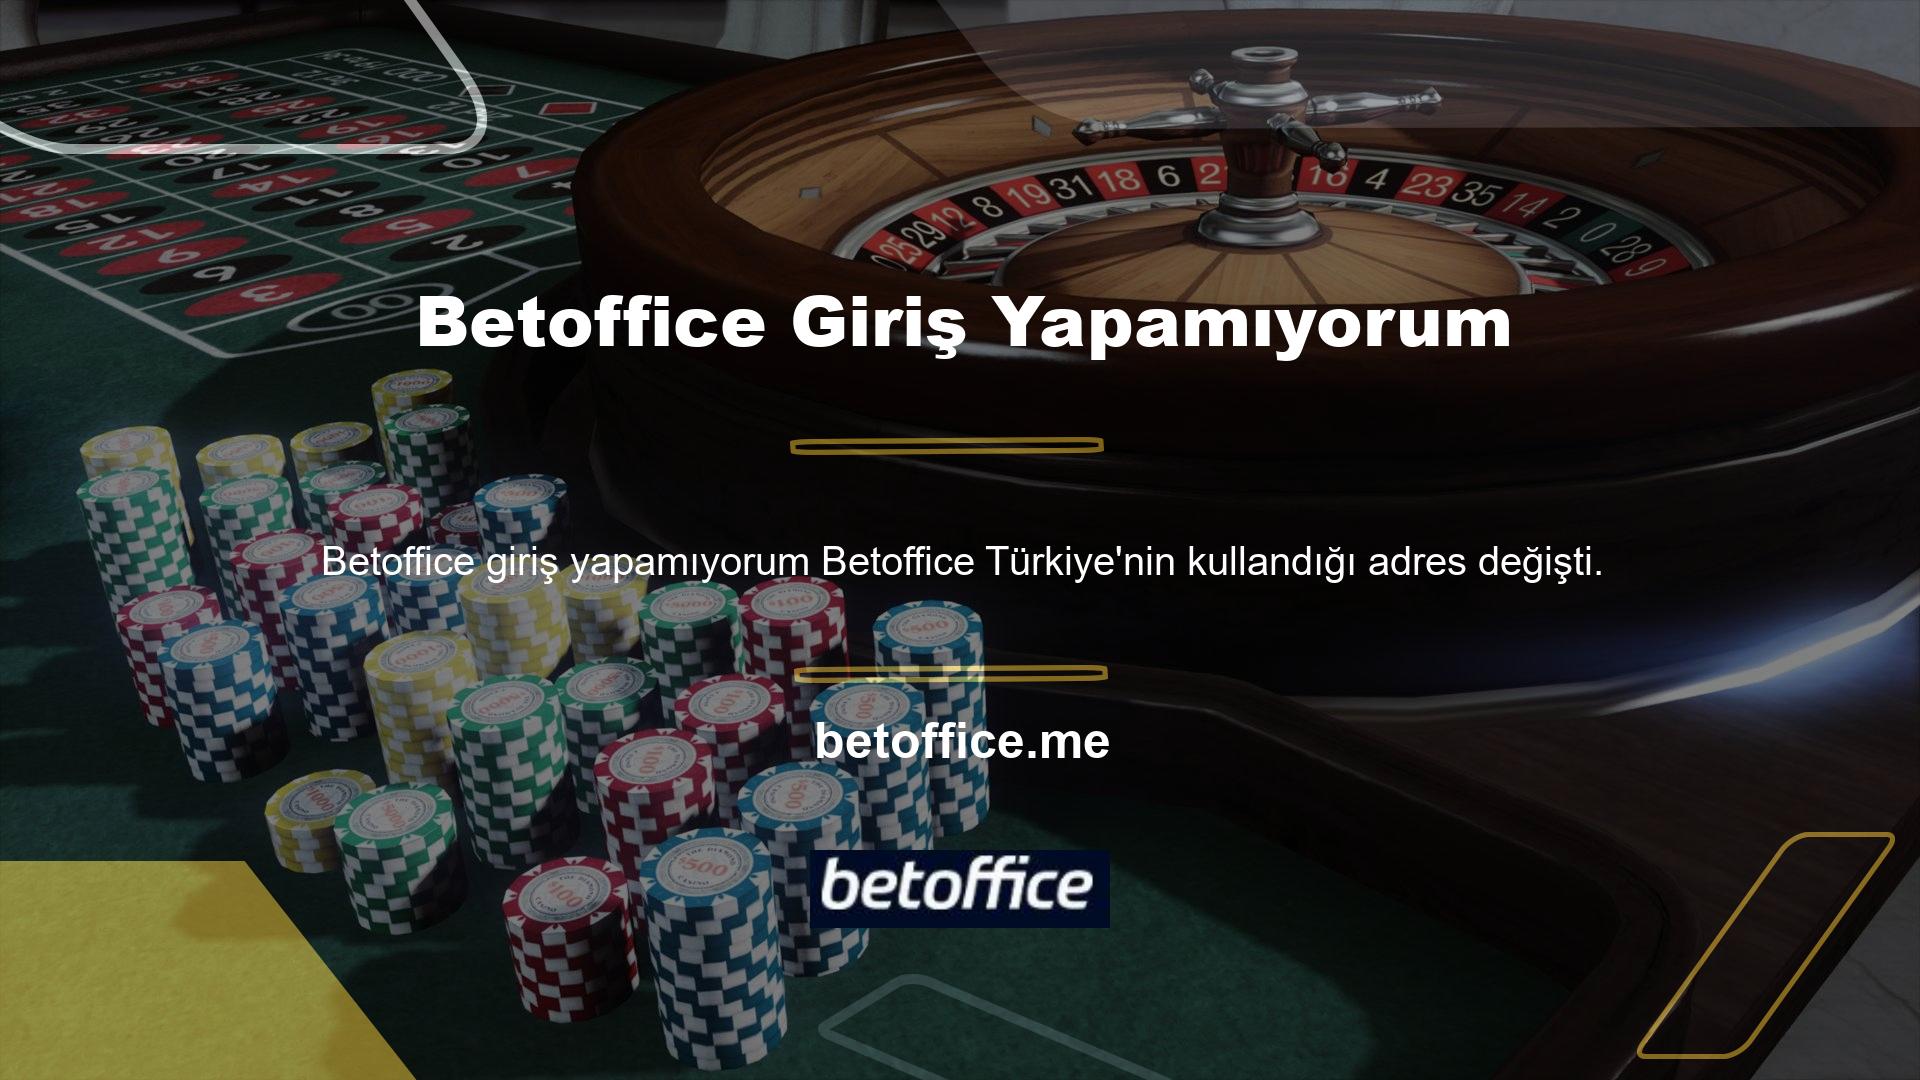 Betoffice yeni adresine ne oldu? Betoffice yeni giriş adresi bu sitenin Türkiye'de ve internette aktif olarak kullandığı adrestir